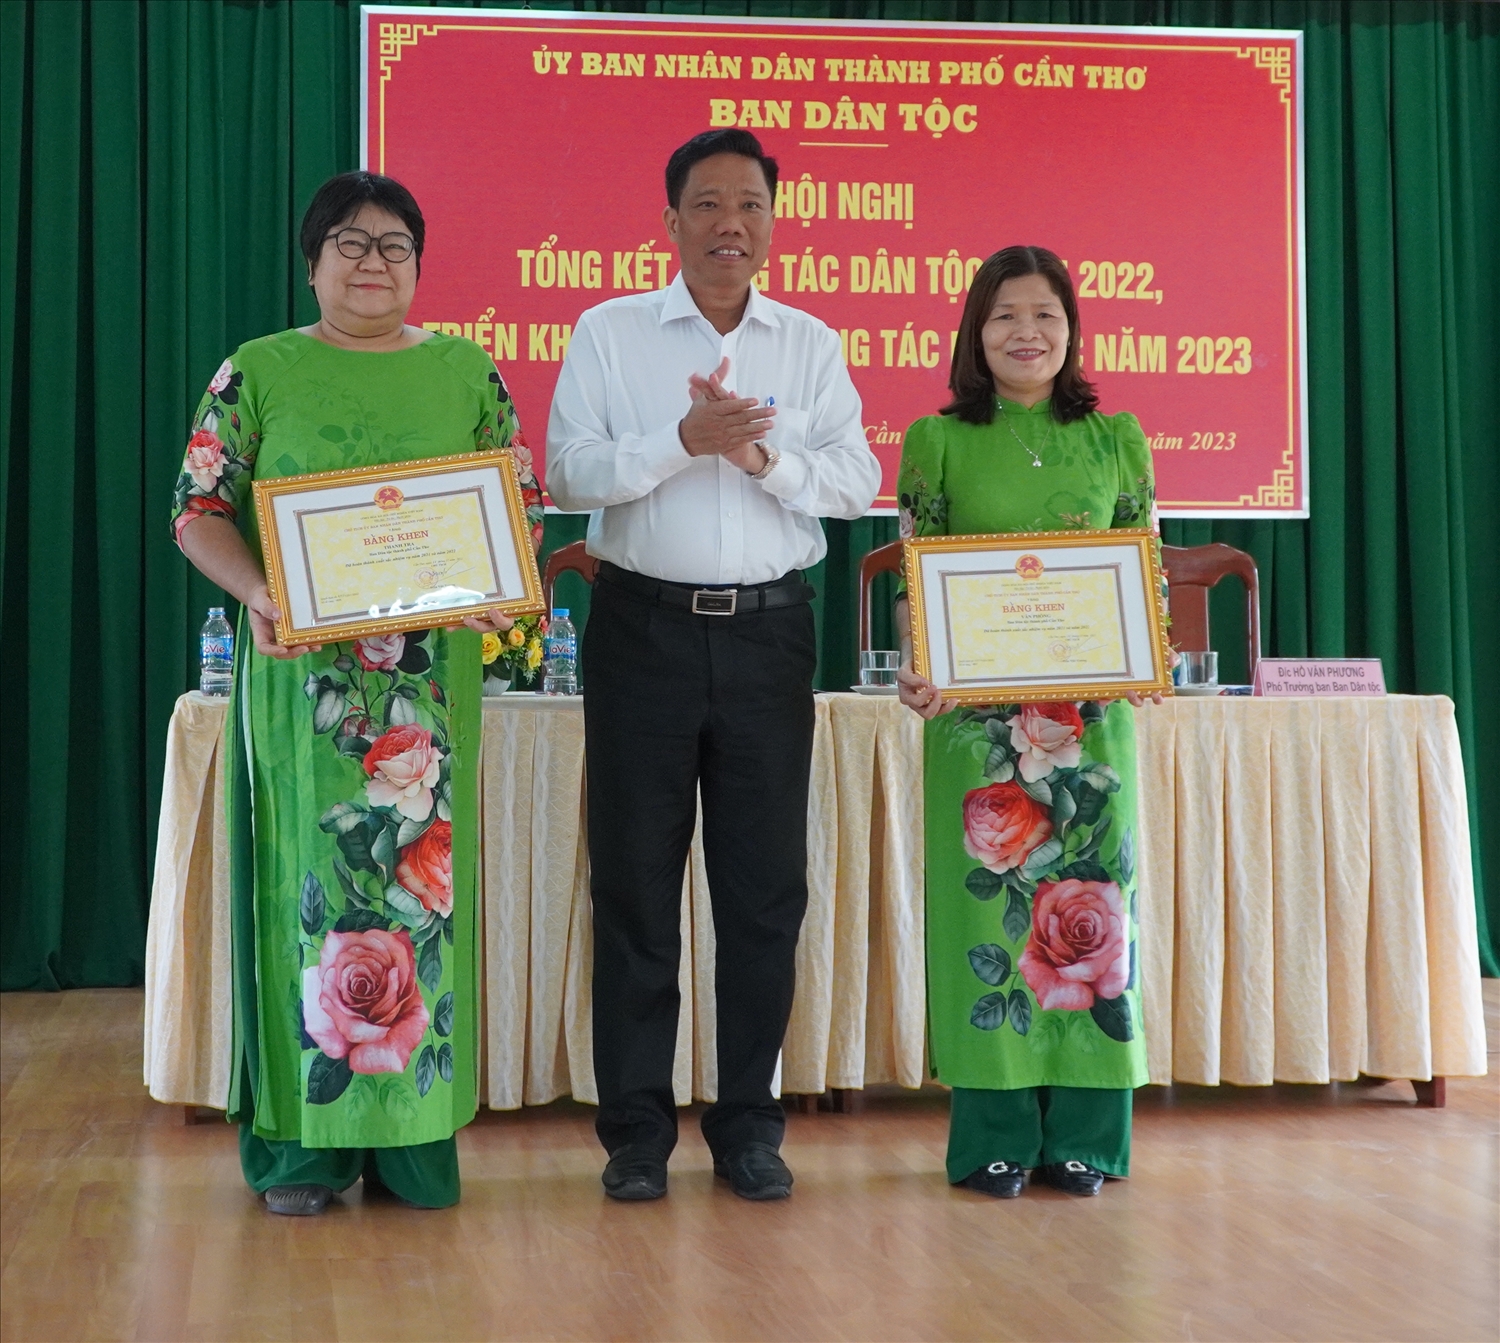 Ông Nguyễn Thực Hiện, Phó Chủ tịch UBND TP. Cần Thơ trao Bằng khen đến 2 tập thể